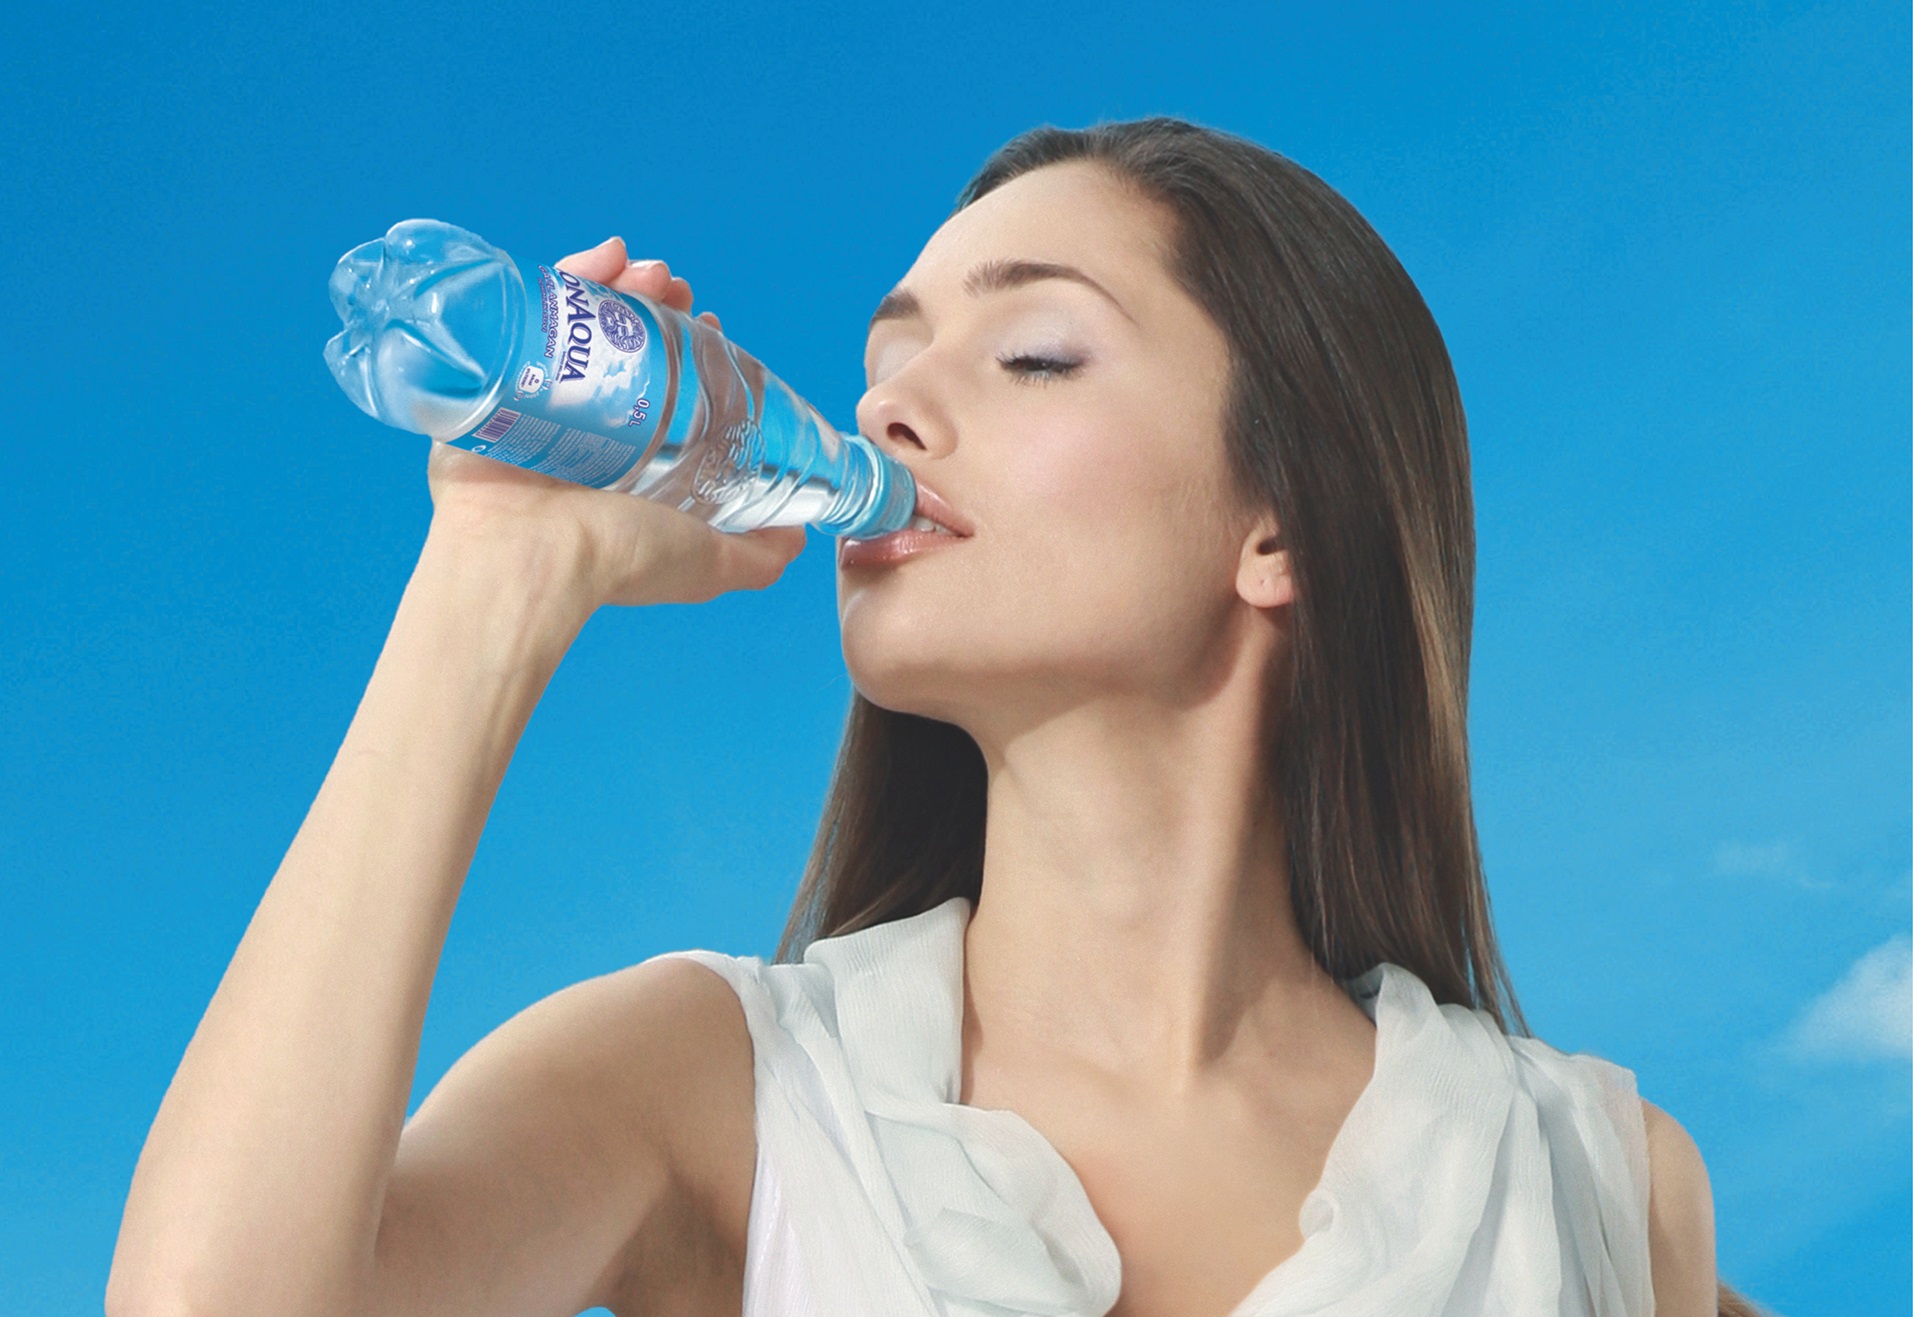 Сколько пить воды в день: рекомендации и советы